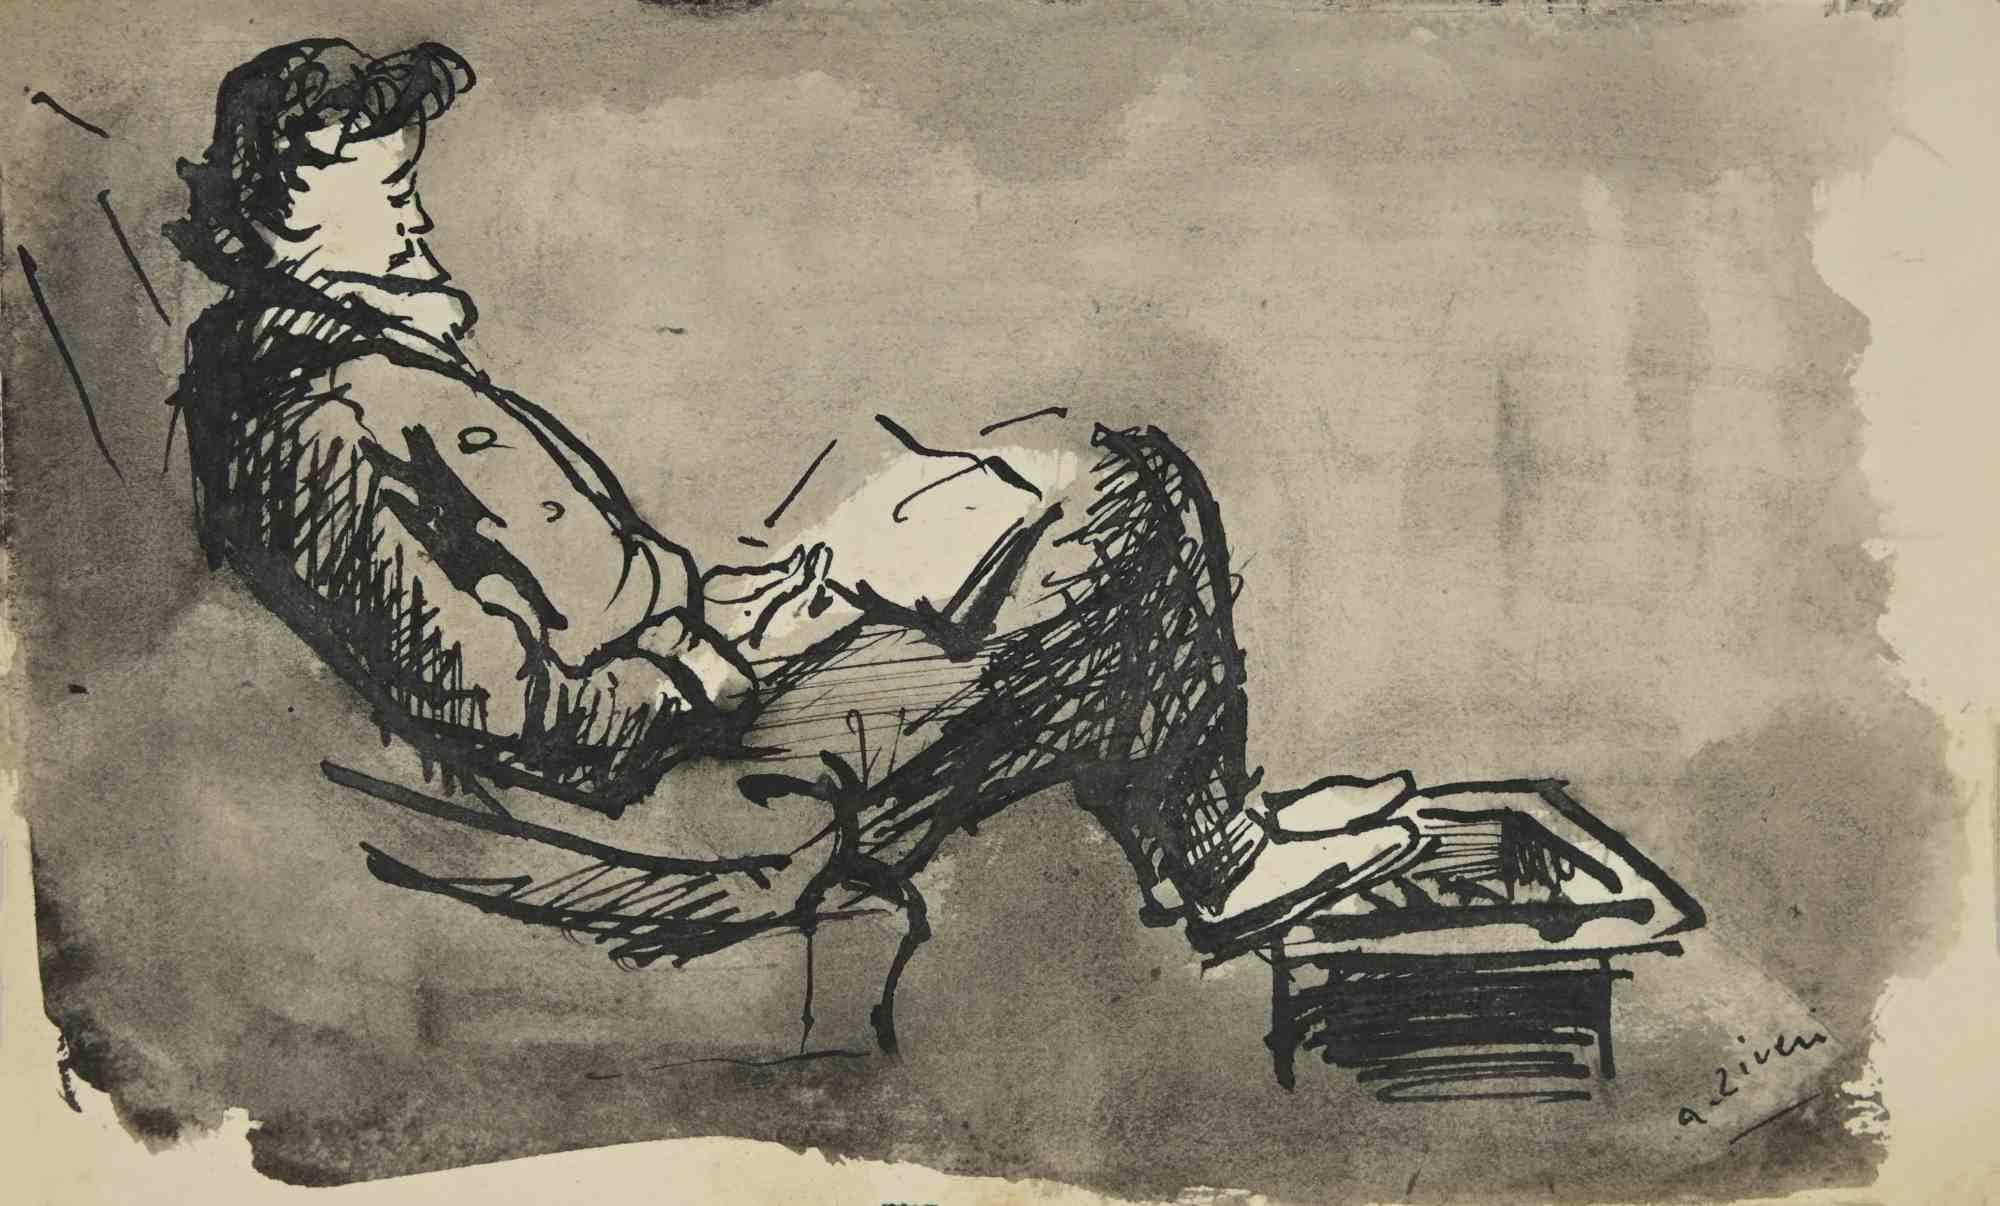 Der lesende Mann ist eine Zeichnung von Alberto Ziveri aus den 1930er Jahren

Aquarell auf Papier.

Handsigniert.

In gutem Zustand. 

Das Kunstwerk wird durch geschickte Striche meisterhaft dargestellt.

Alberto Ziveri (Rom, 1908 - 1990), der